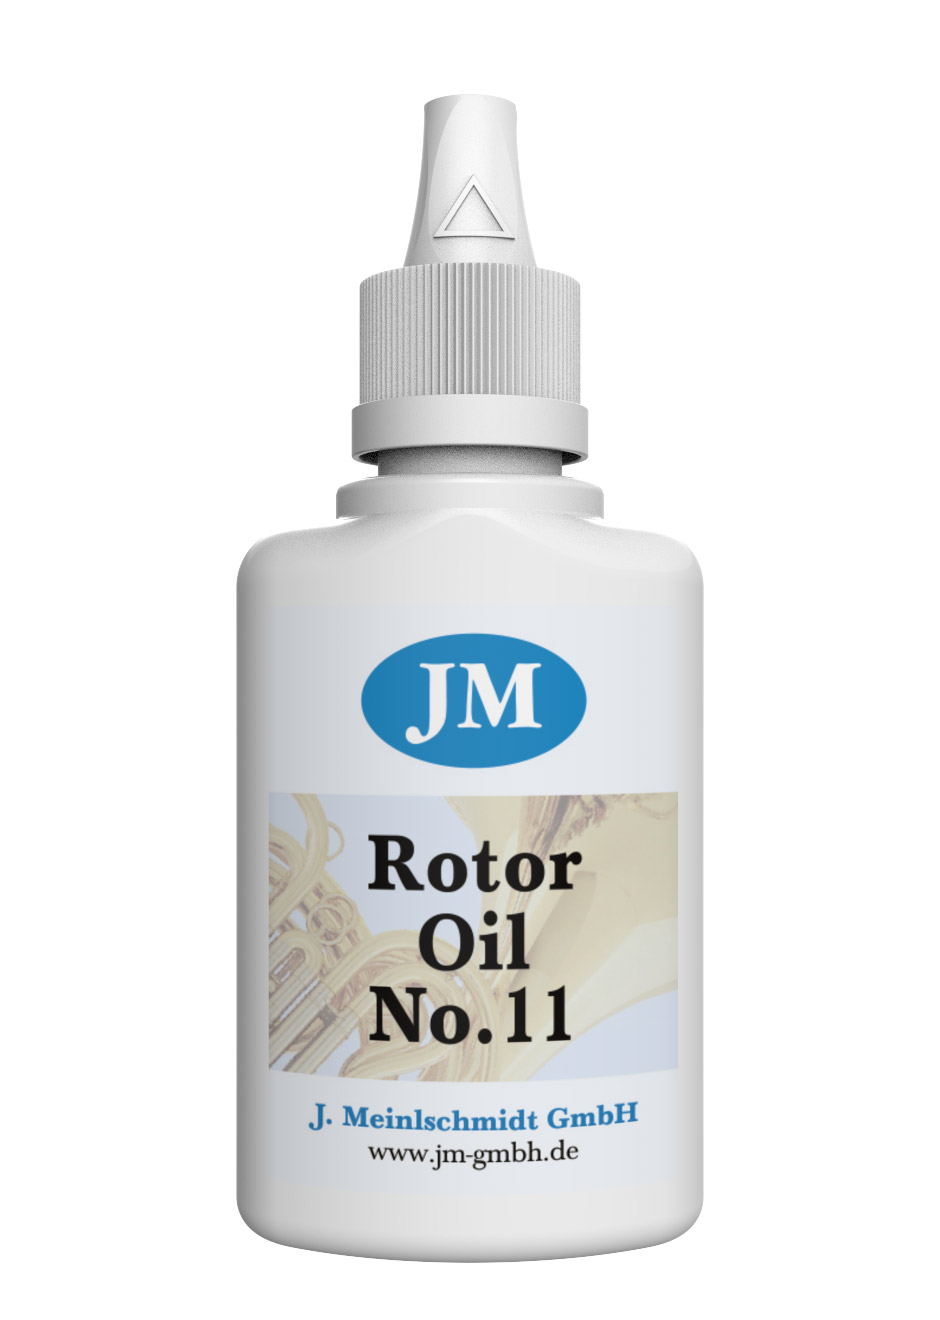 JM Rotor Oil No. 11